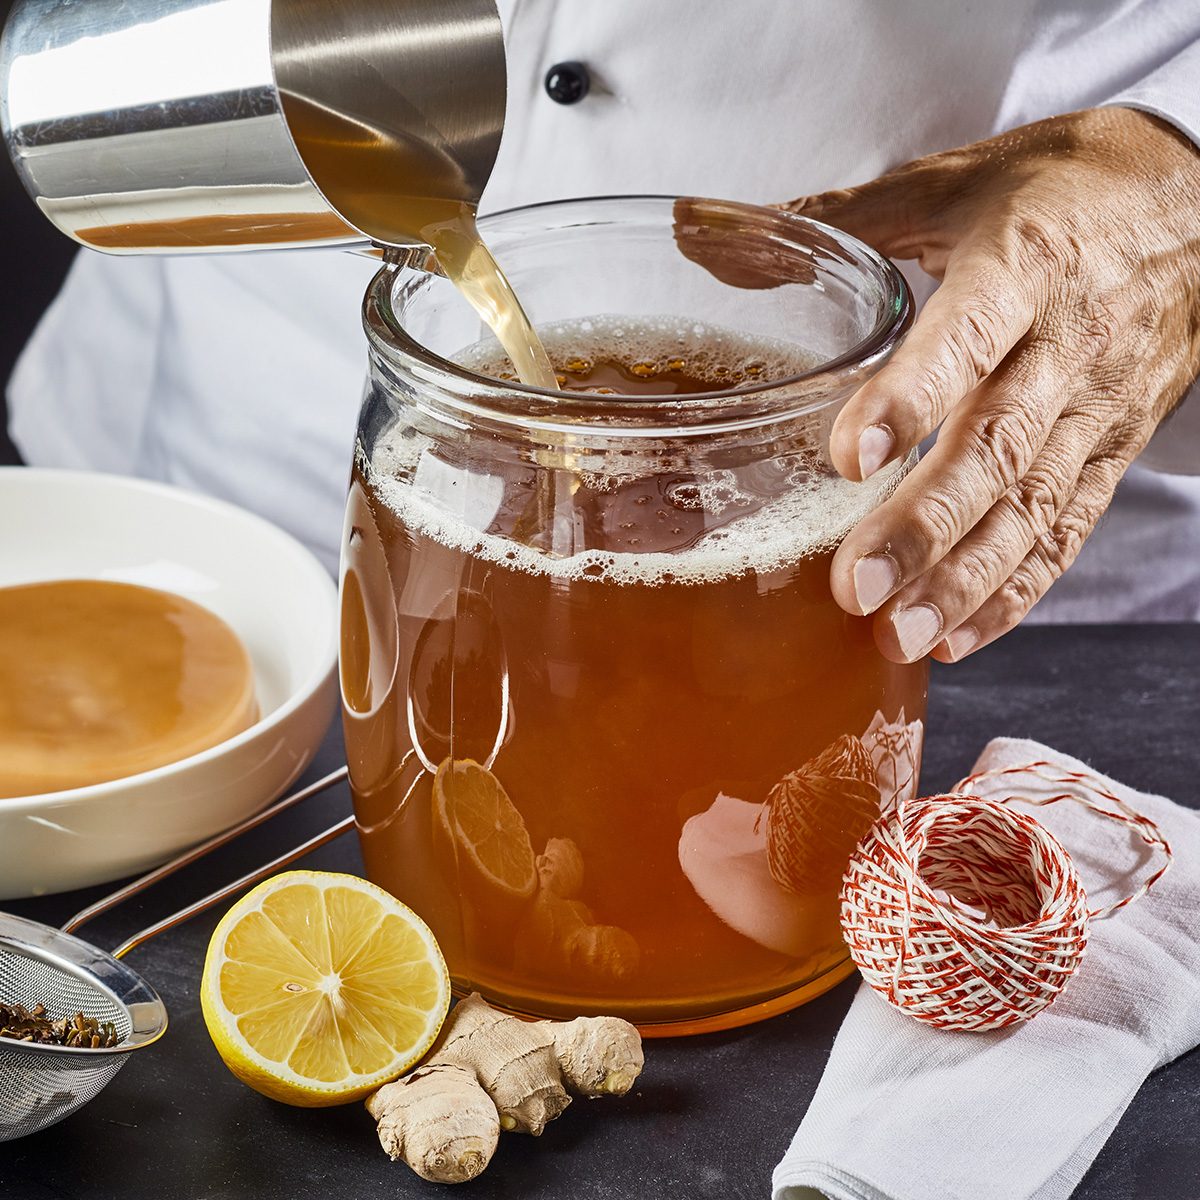 一名男子在自制康普茶的同时，将加了糖的红茶倒入灭菌玻璃罐中，准备加入scoby